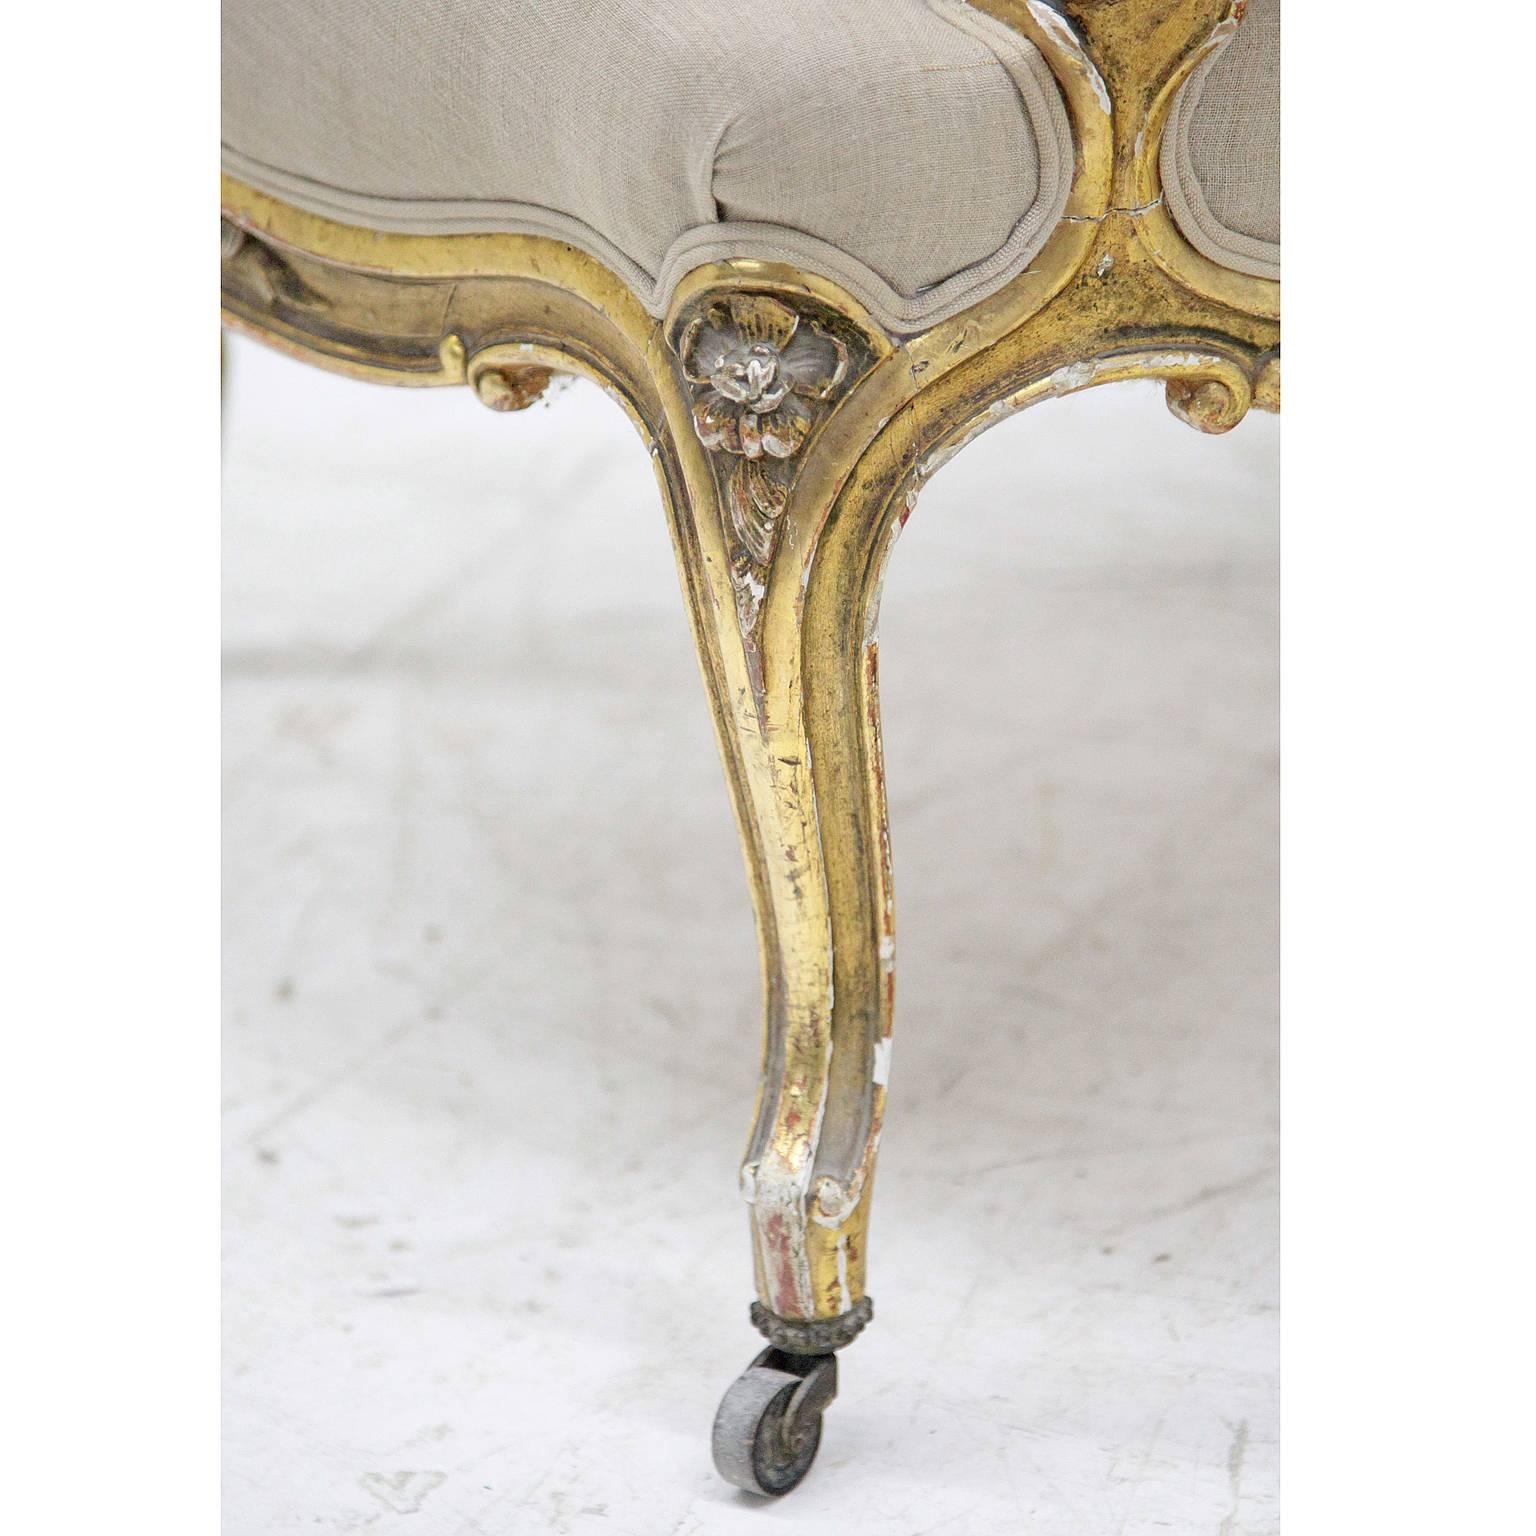 Sessel Napoleon III auf s-förmigen Beinen mit geschwungener Zarge. Die hohe, abgerundete Rückenlehne sowie der Sitz und die Armlehnen sind gepolstert. Der golden patinierte Rahmen ist mit geschnitzten floralen Elementen verziert.